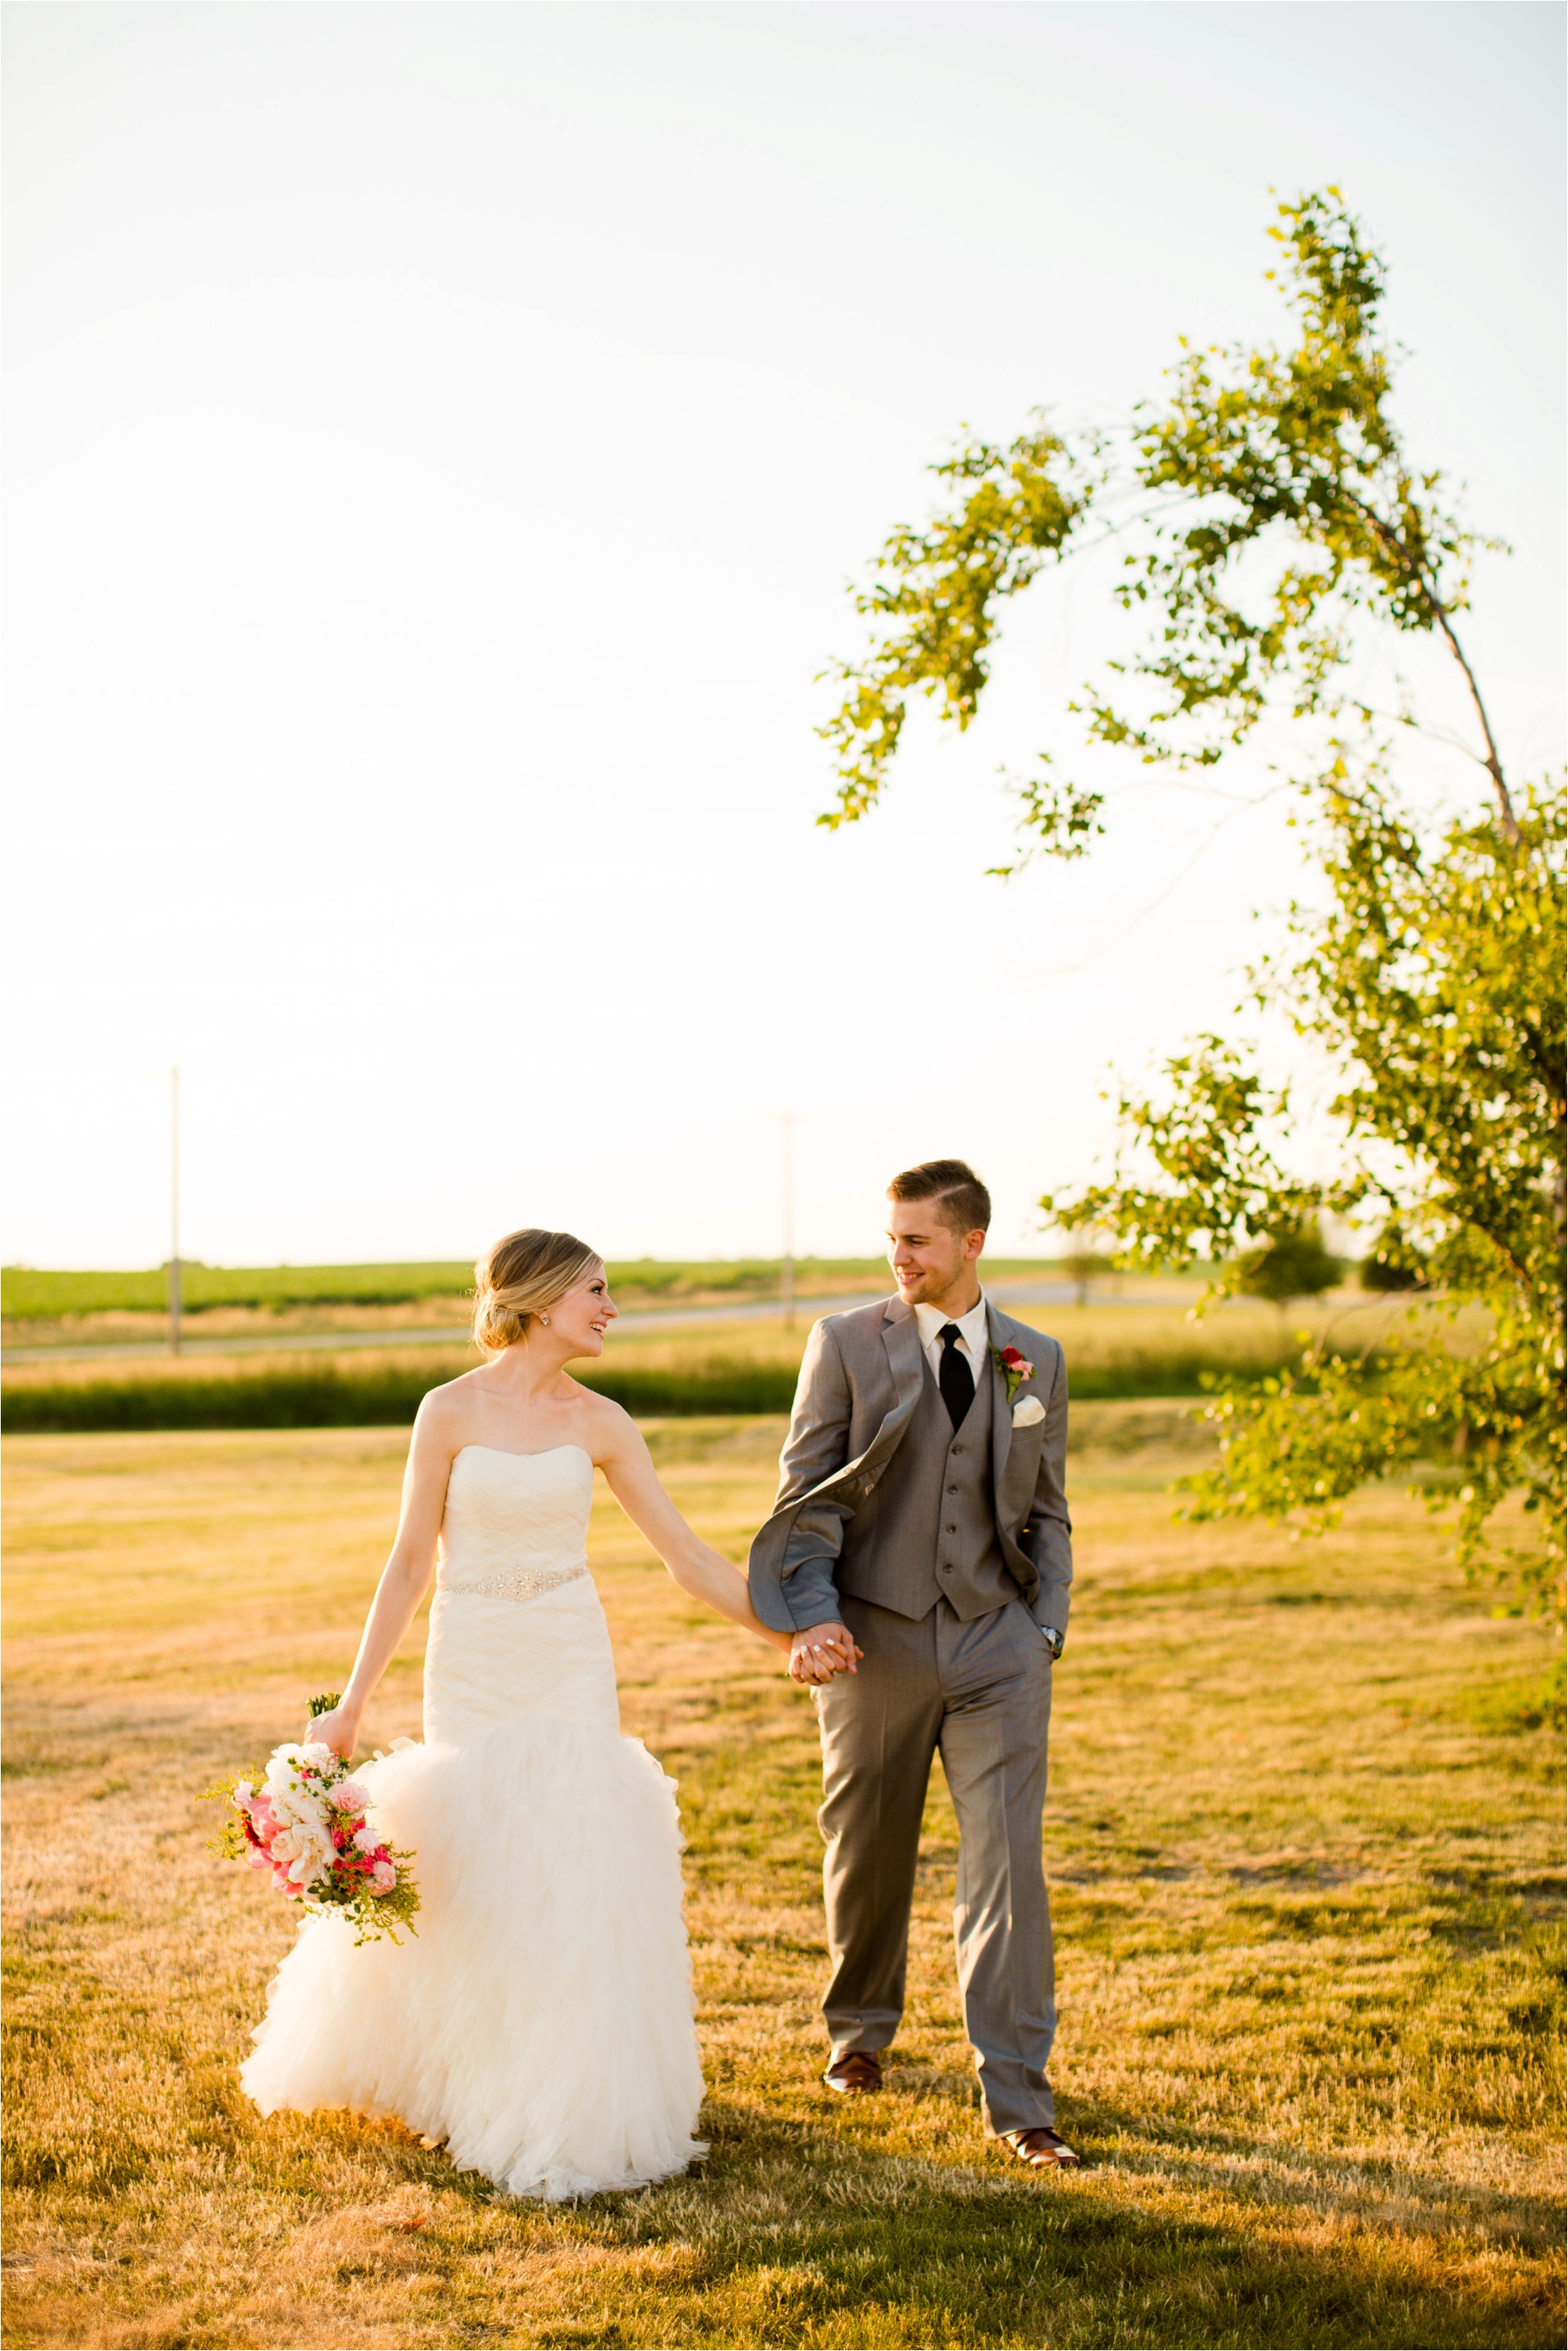 Caitlin and Luke Photography, Bloomington Normal Wedding Photographers, Illinois Wedding Photographers, Illinois Husband and Wife Wedding Photography Team_0345.jpg